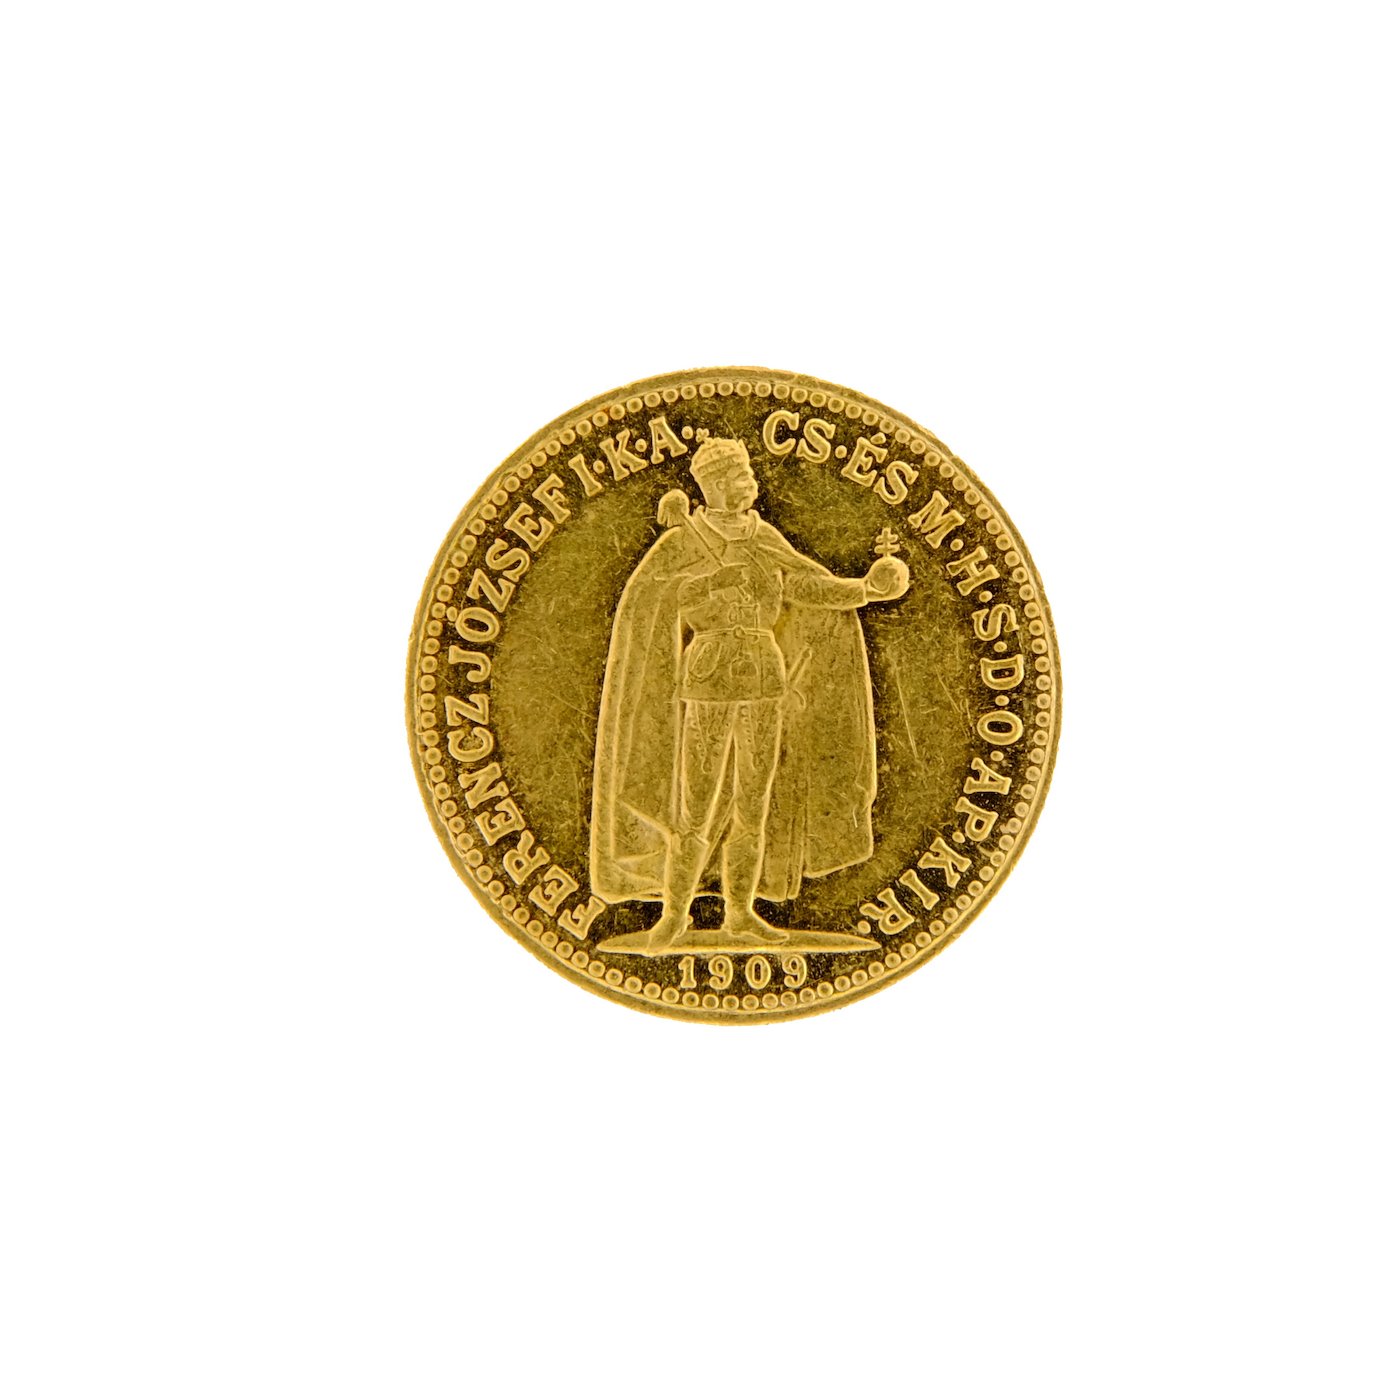 Mince - Rakousko Uhersko zlatá 10 Koruna 1909 K.B. uherská. Zlato 900/1000, hrubá hmotnost mince 3,387g